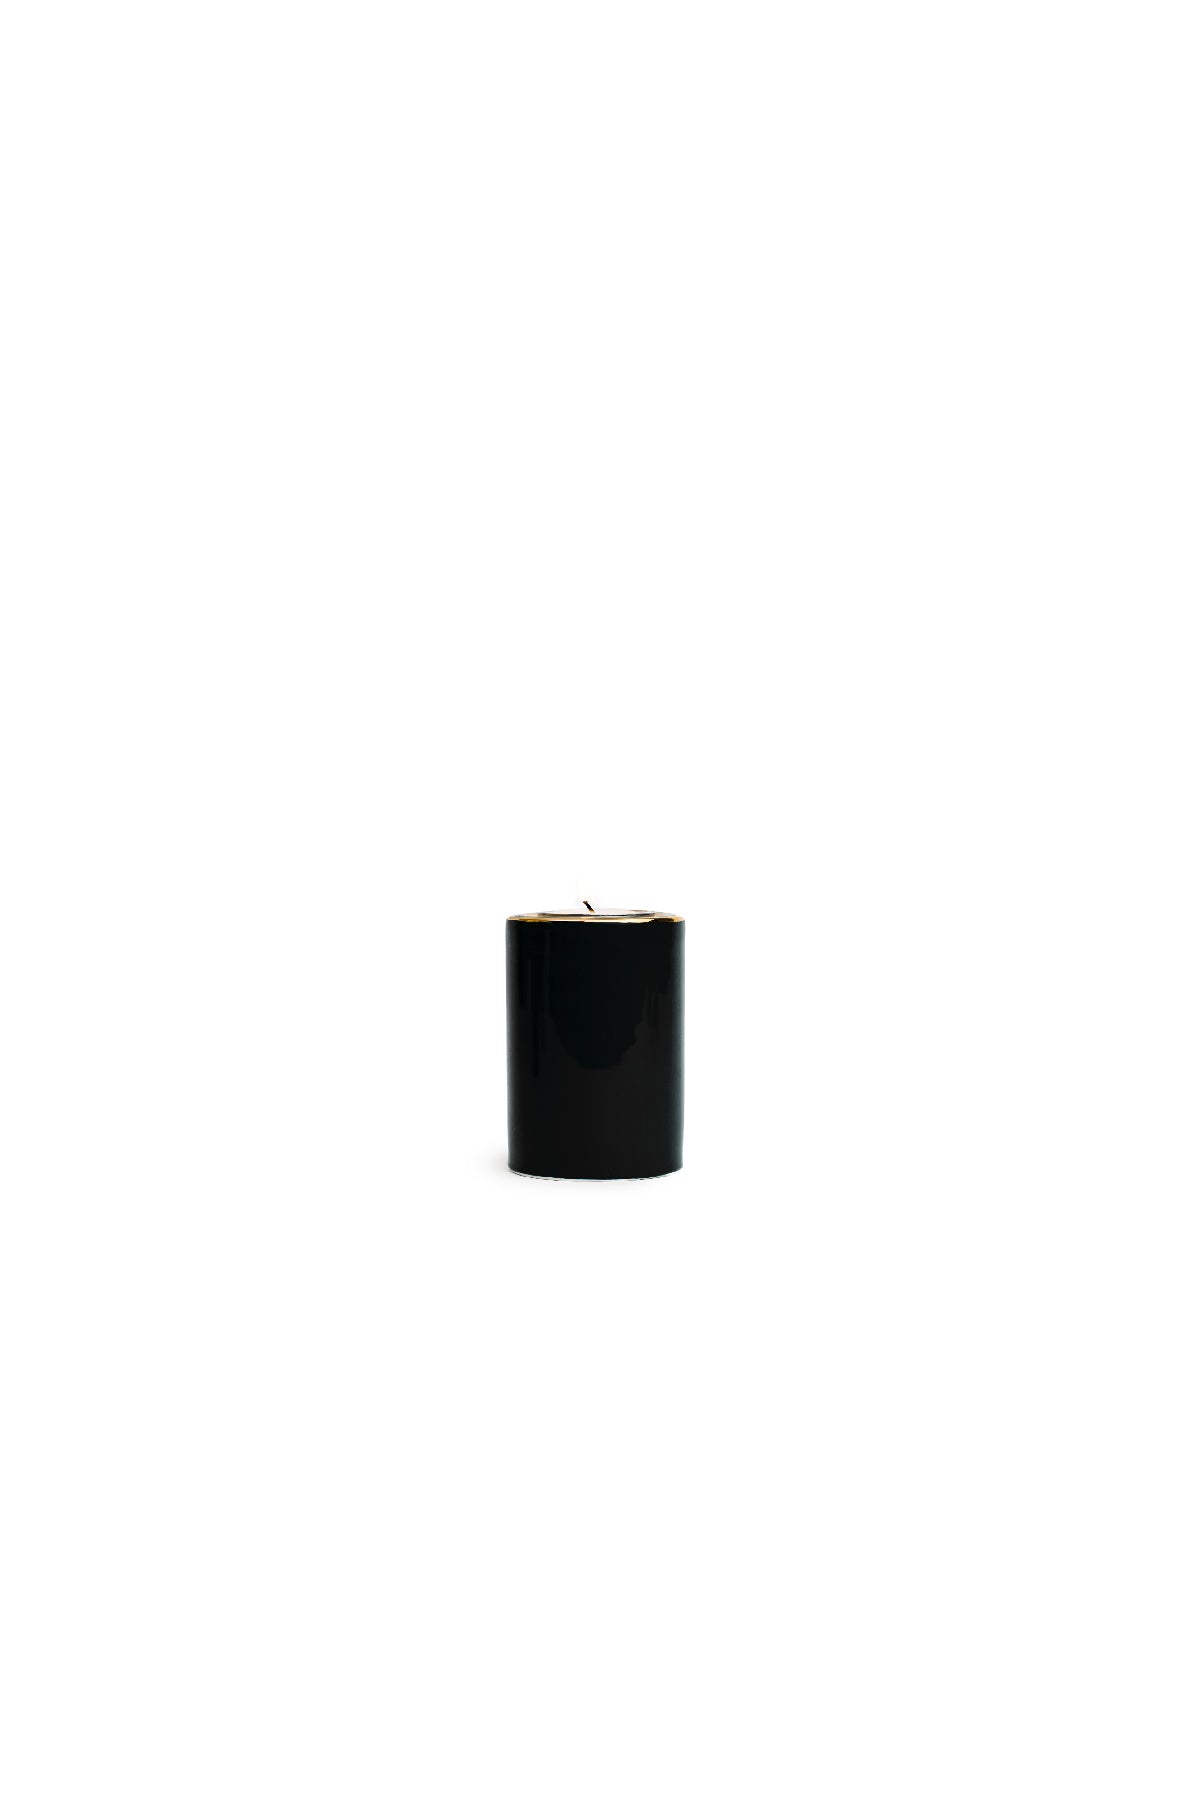 Minimalist Small Ceramic Tea Light Candle Holders